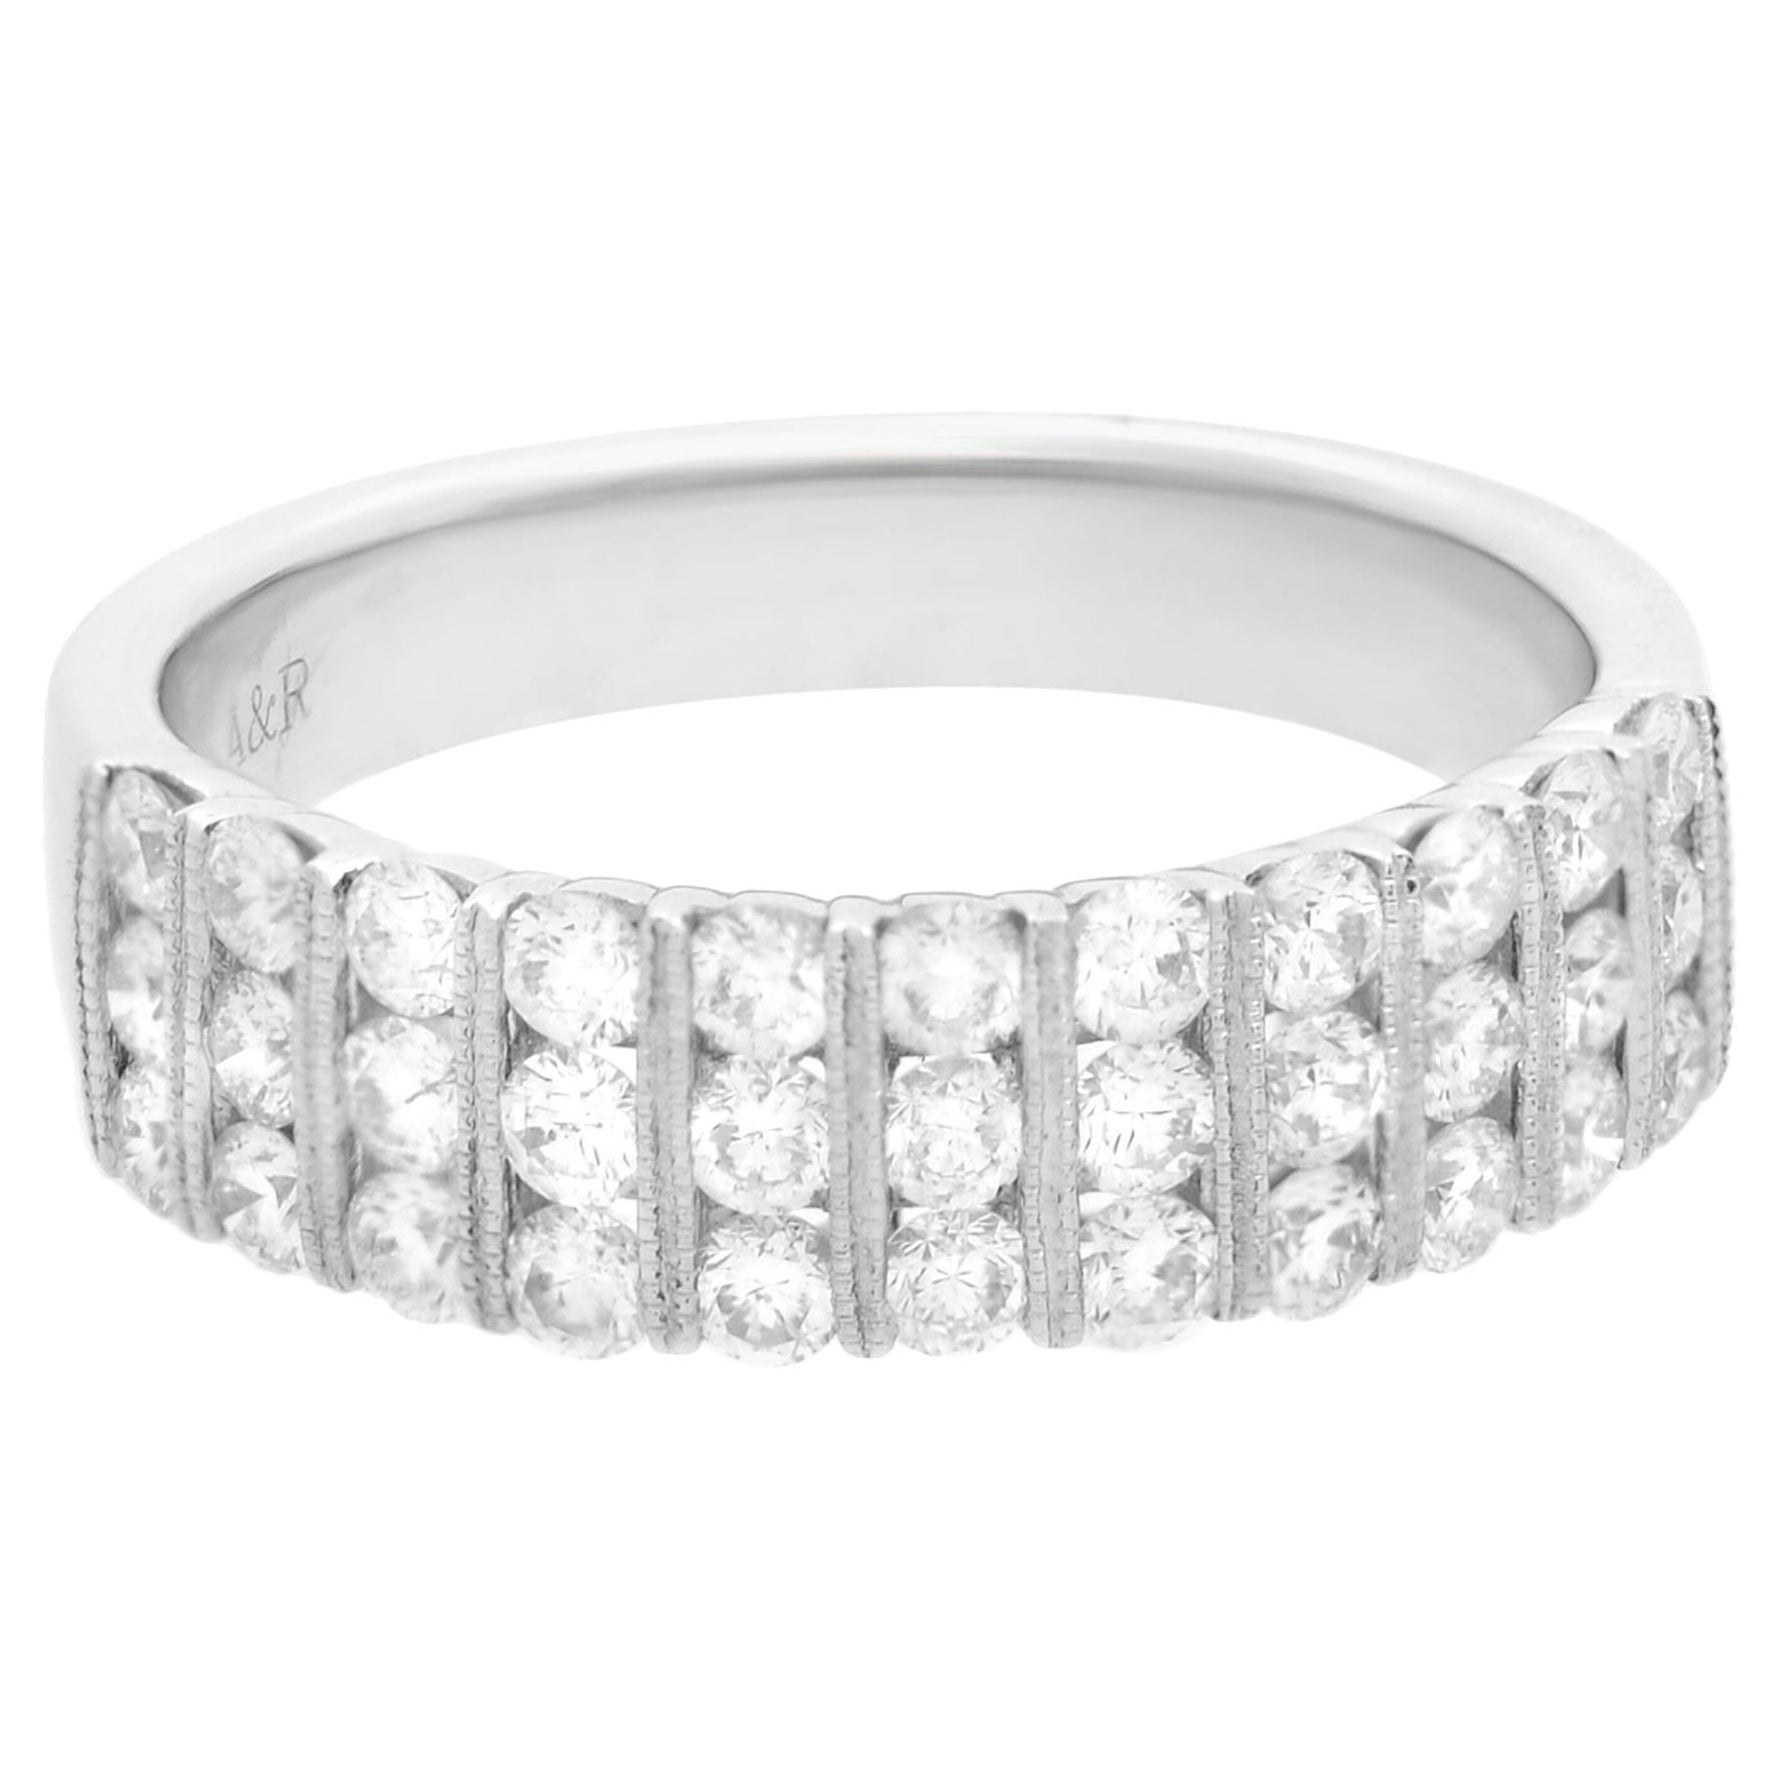 Diamond Channel Set Milgrain Wedding Band Ring 18K White Gold 1.05cttw For Sale